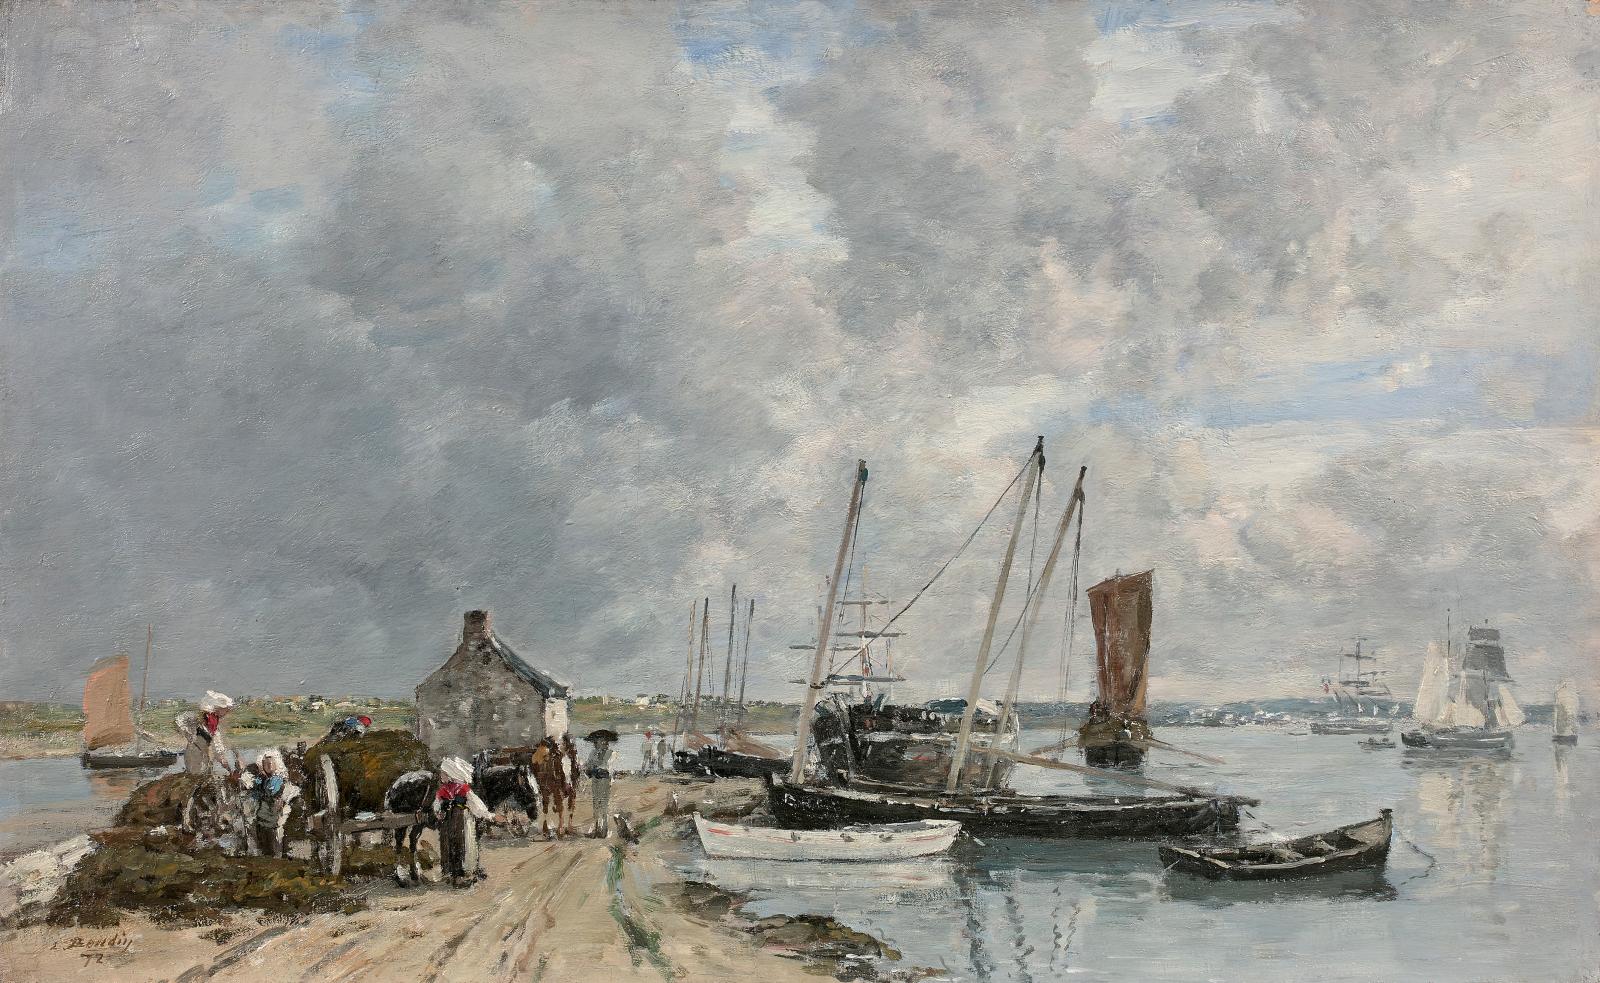 Eugène Boudin (1824-1898), Le Passage. Embouchure de la rivière de Landerneau (Finistère), 1872, huile sur toile, 40,5 x 65,5 cm (détail).